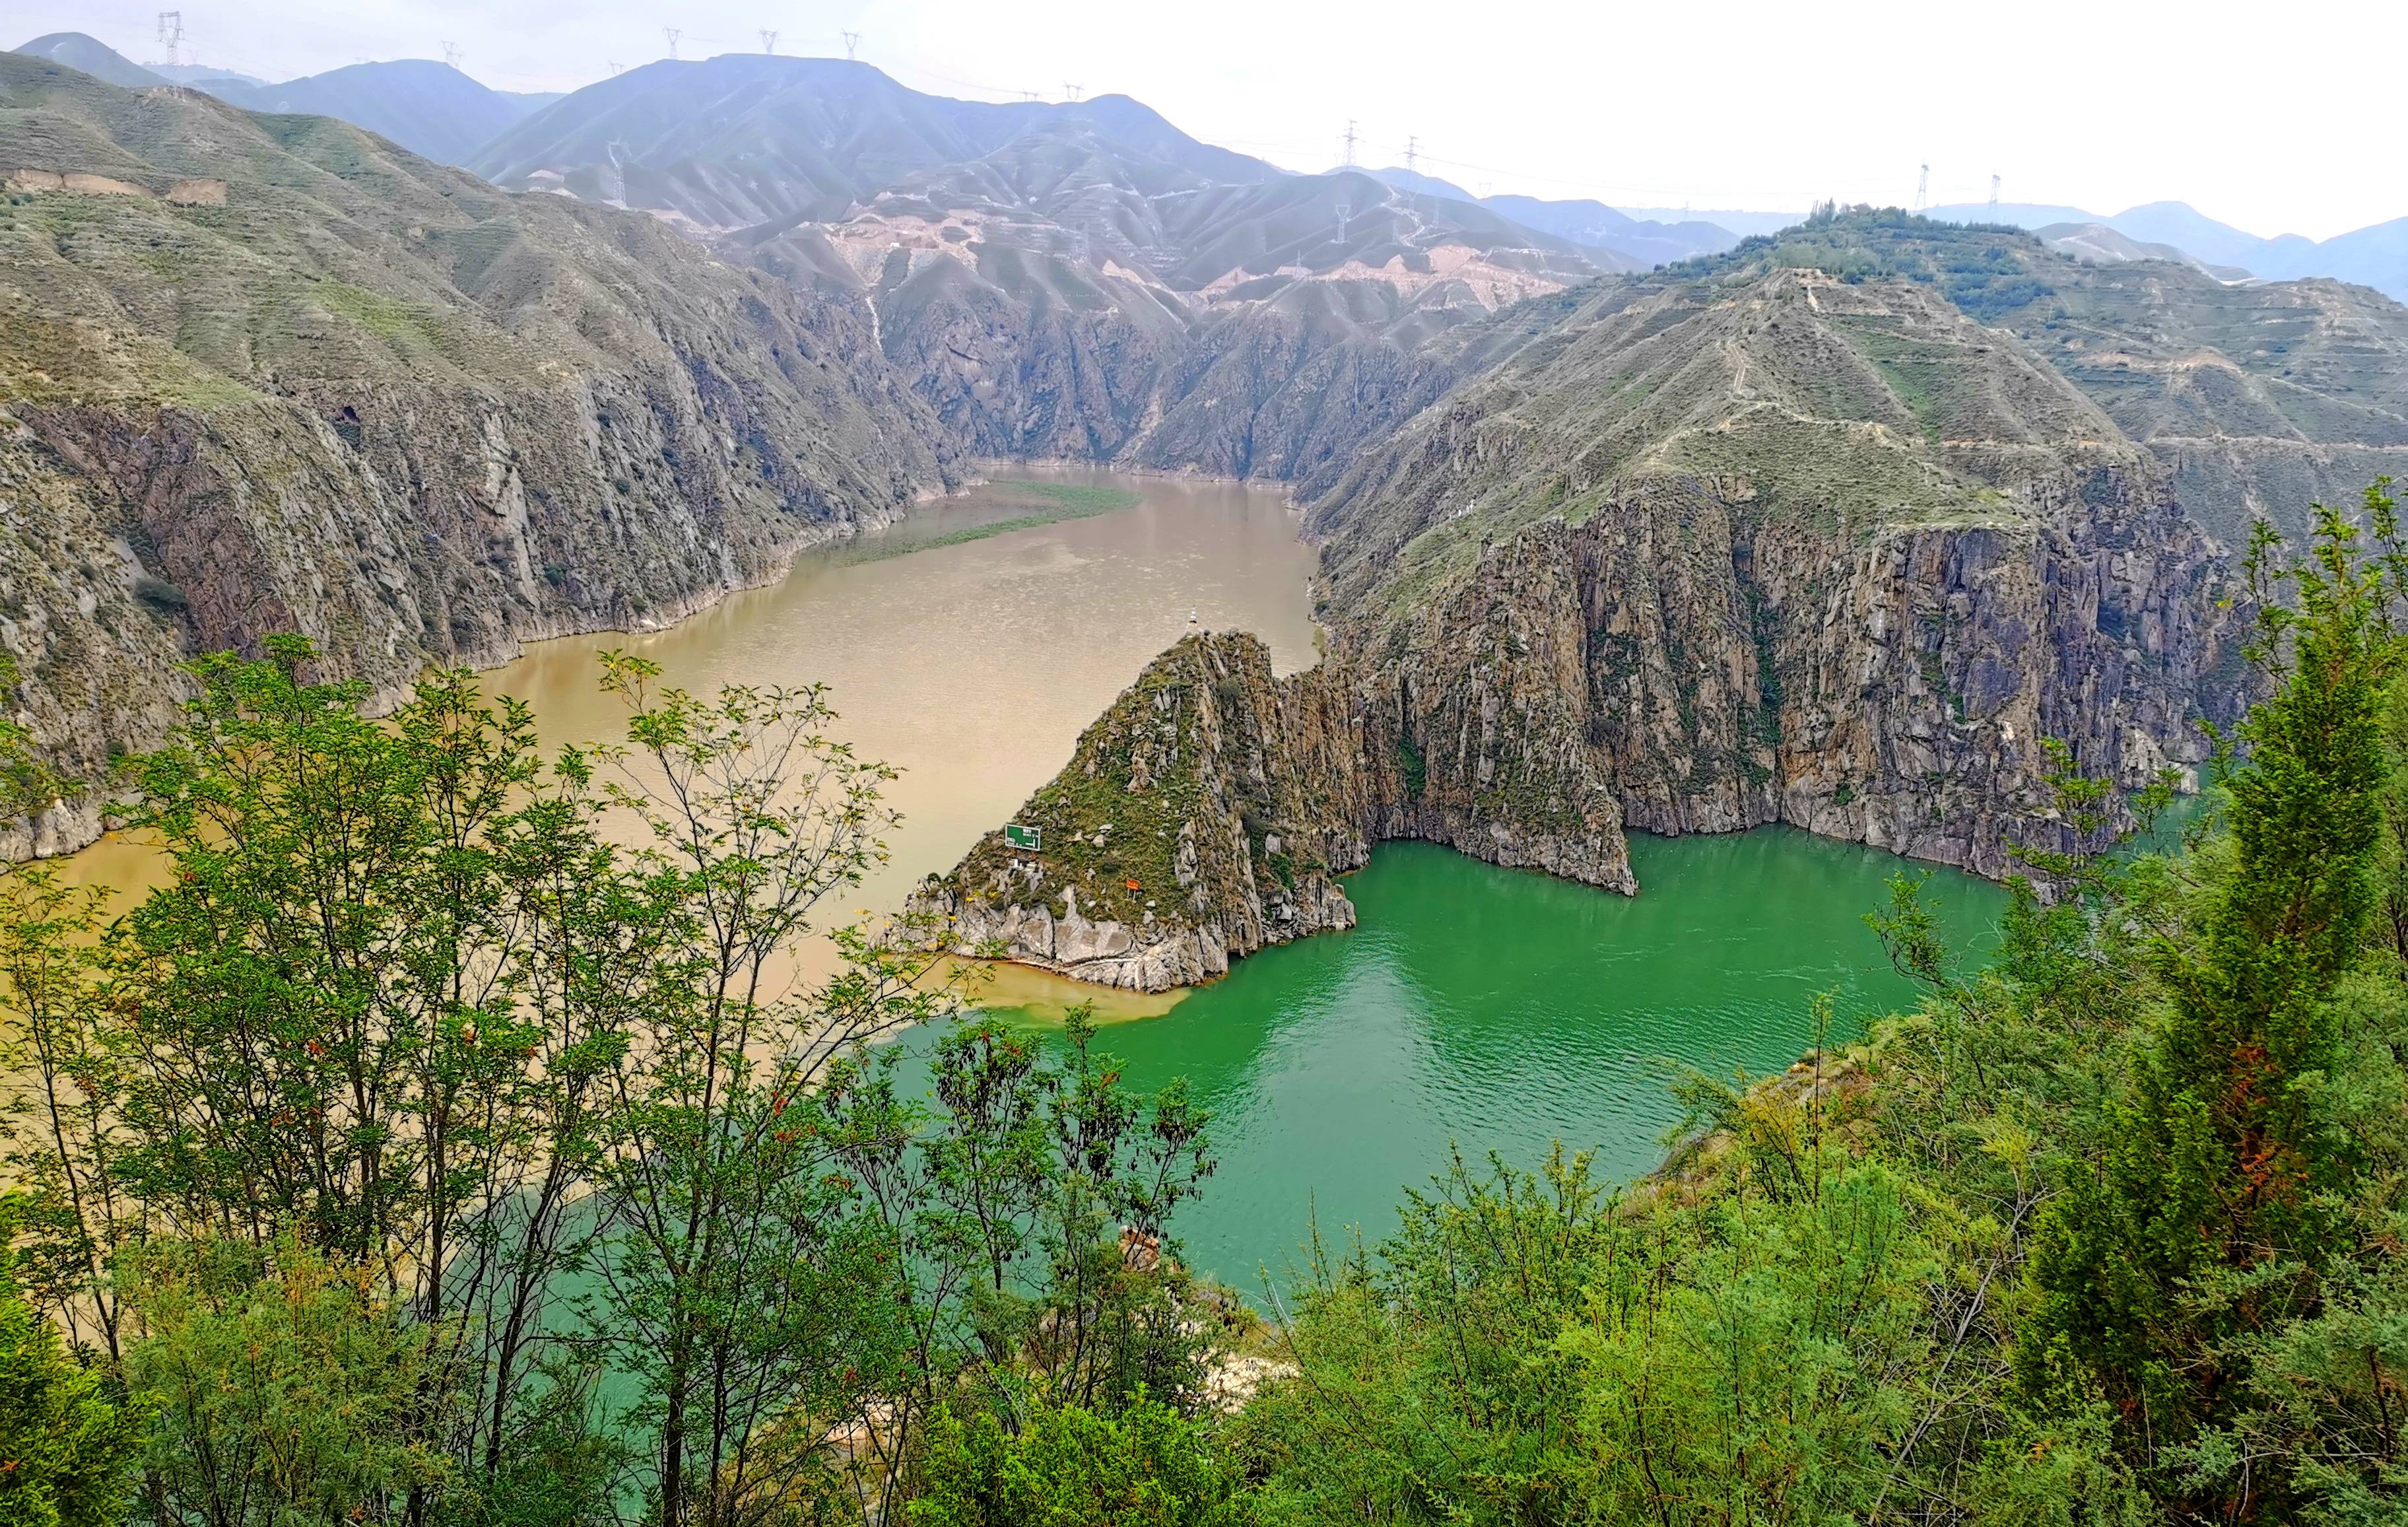 
陕西公布16条高质量生态旅游特色线路覆盖66个生态旅游景点